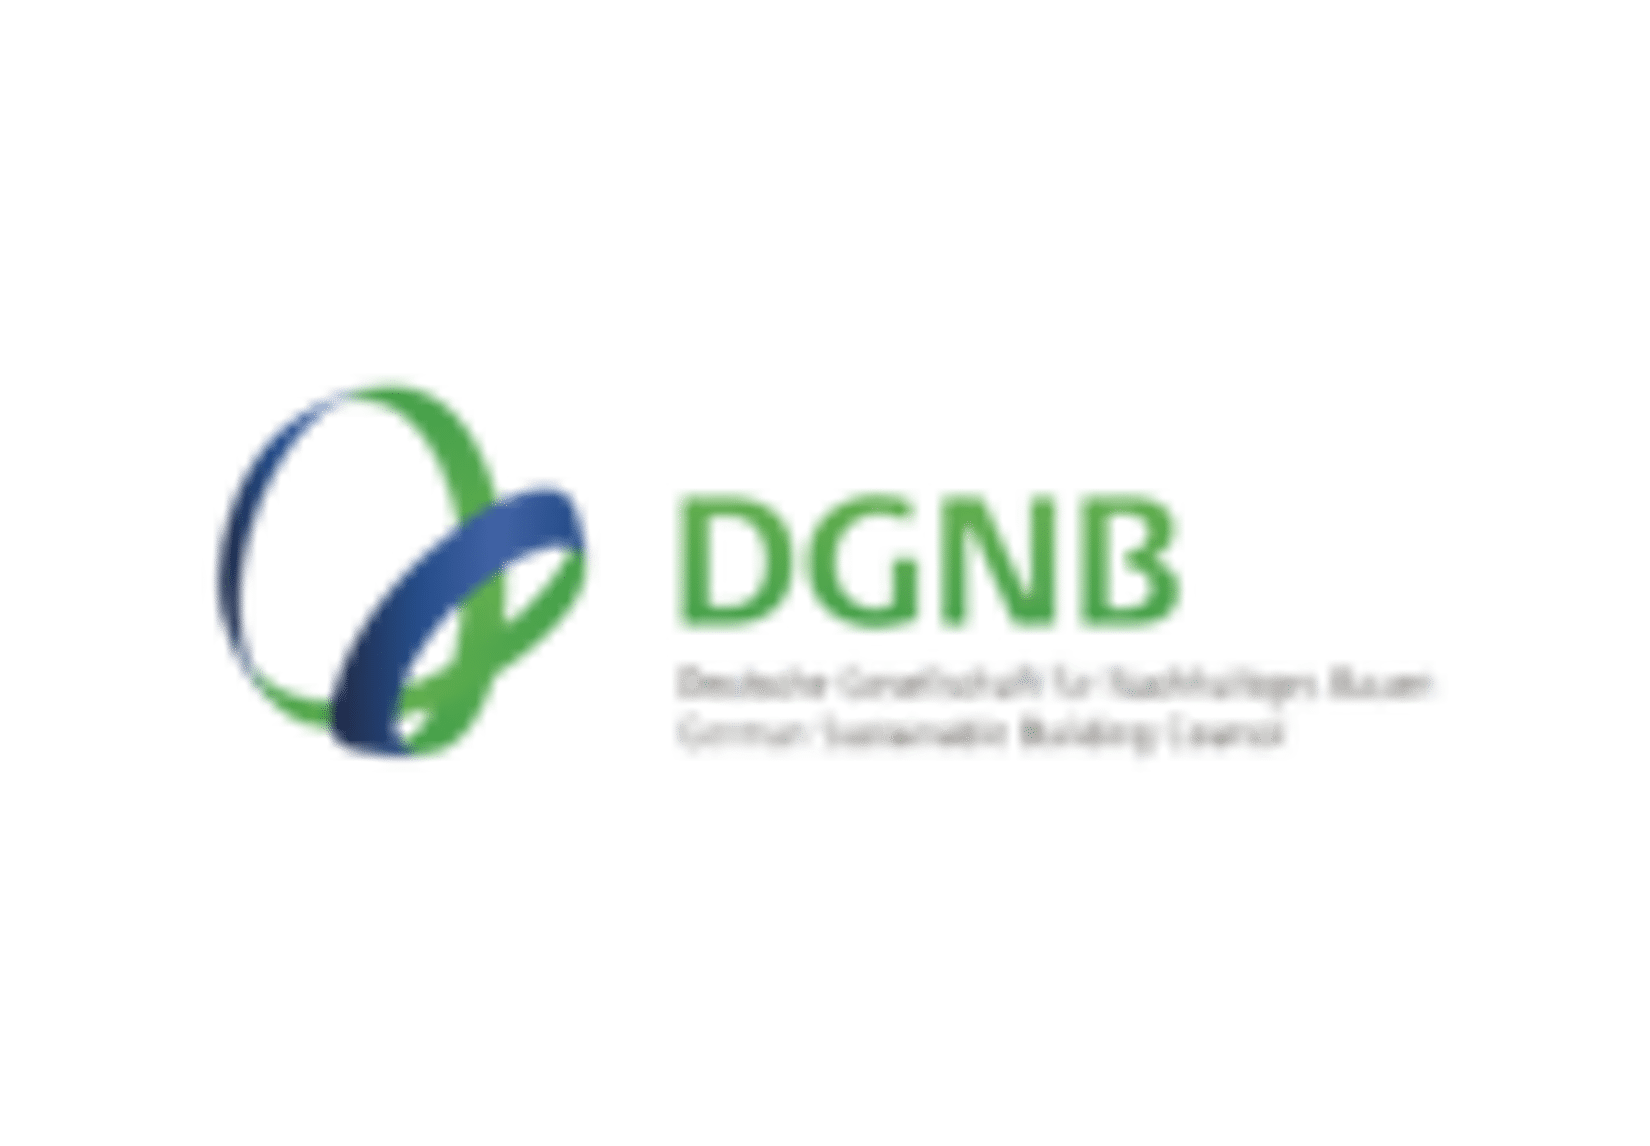 Logo: DGNB